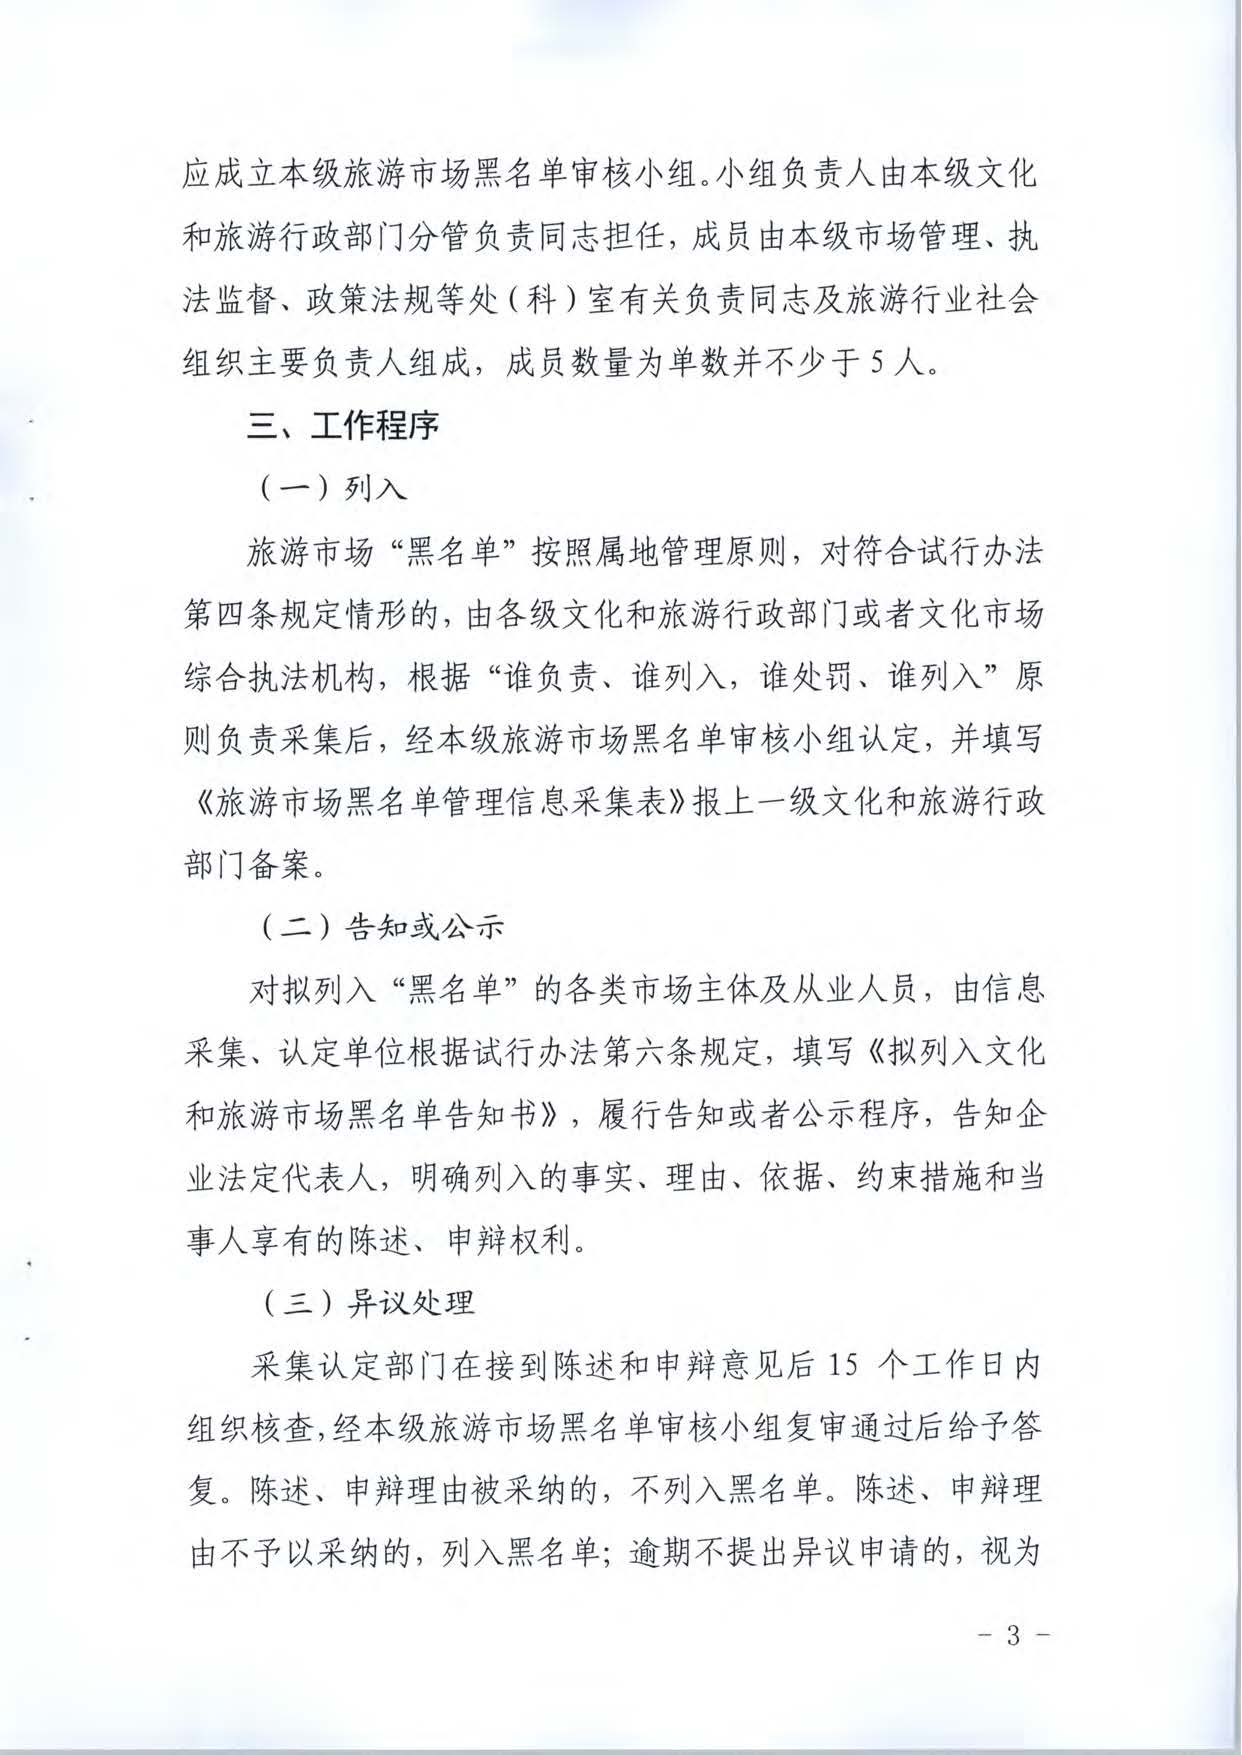 广东省文化和旅游厅关于推进文化和旅游市场信用修复工作的通知_页面_22.jpg